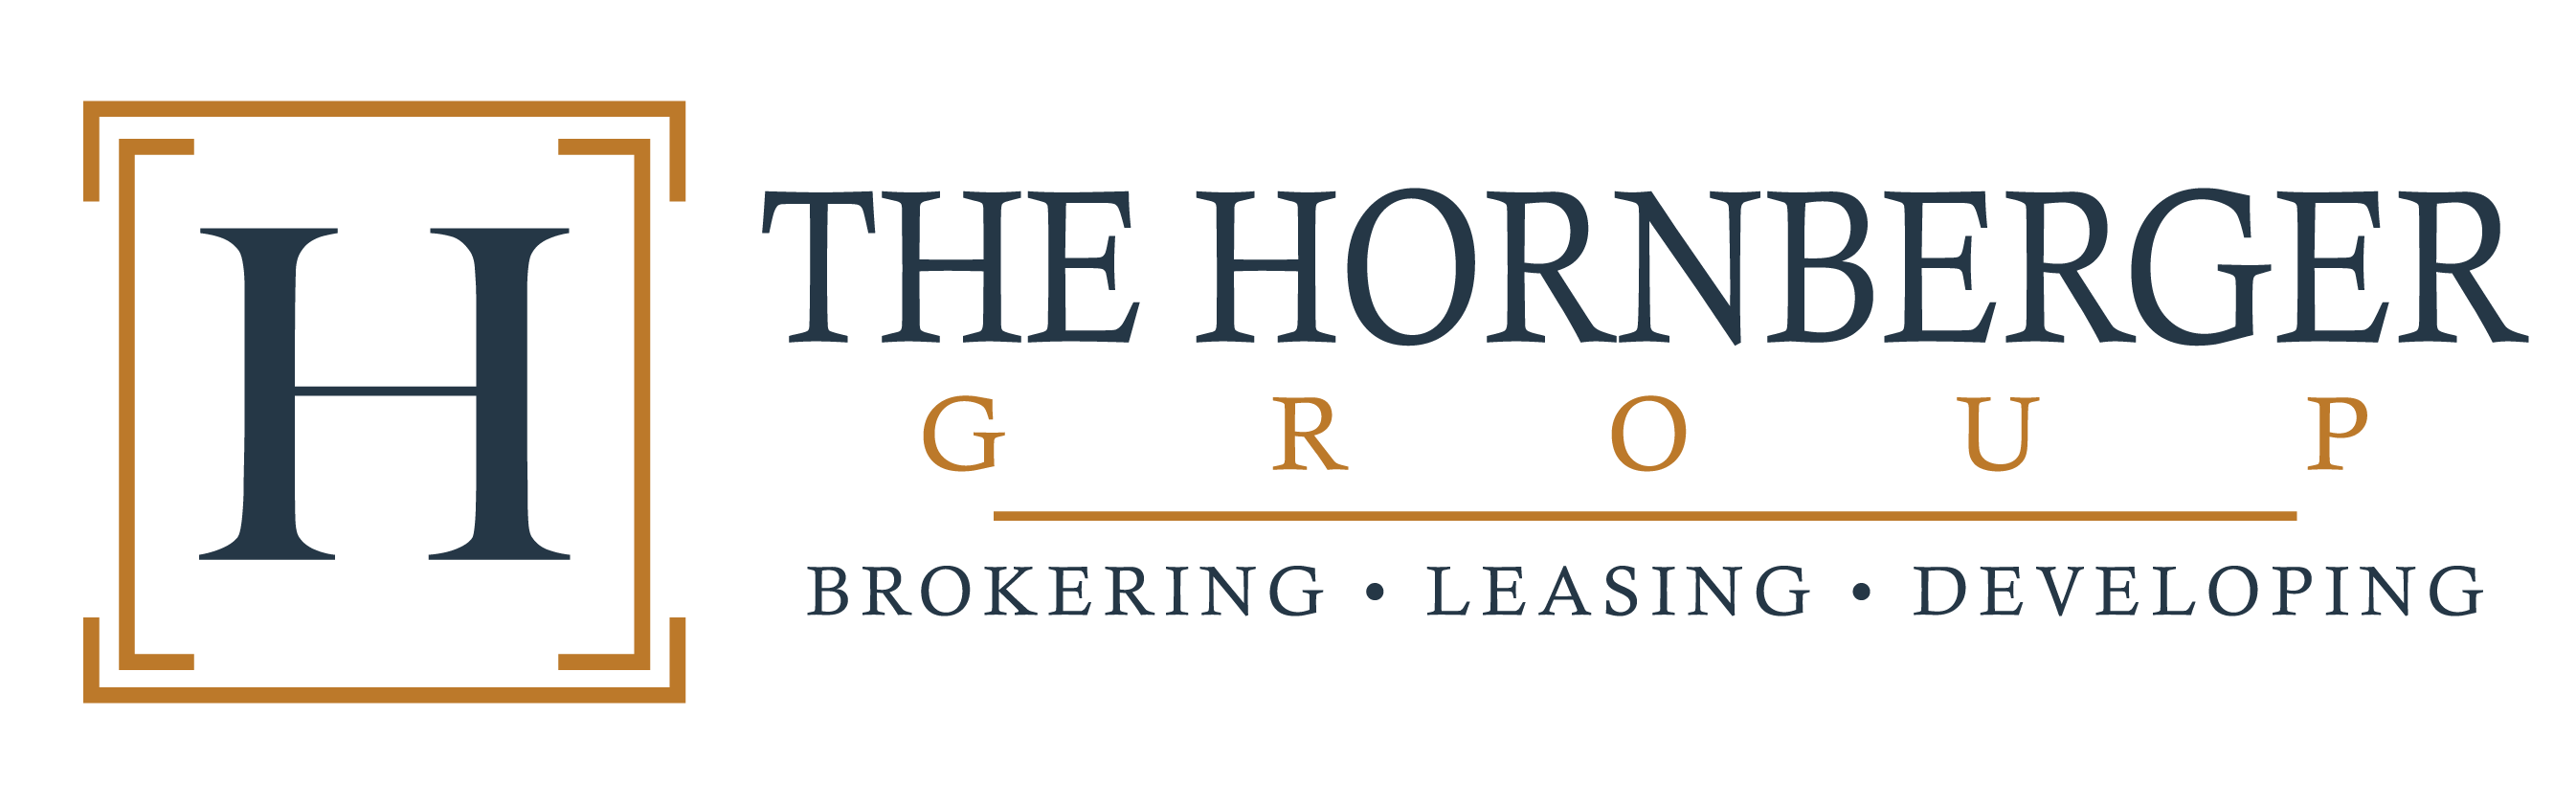 The Hornberger Group logo